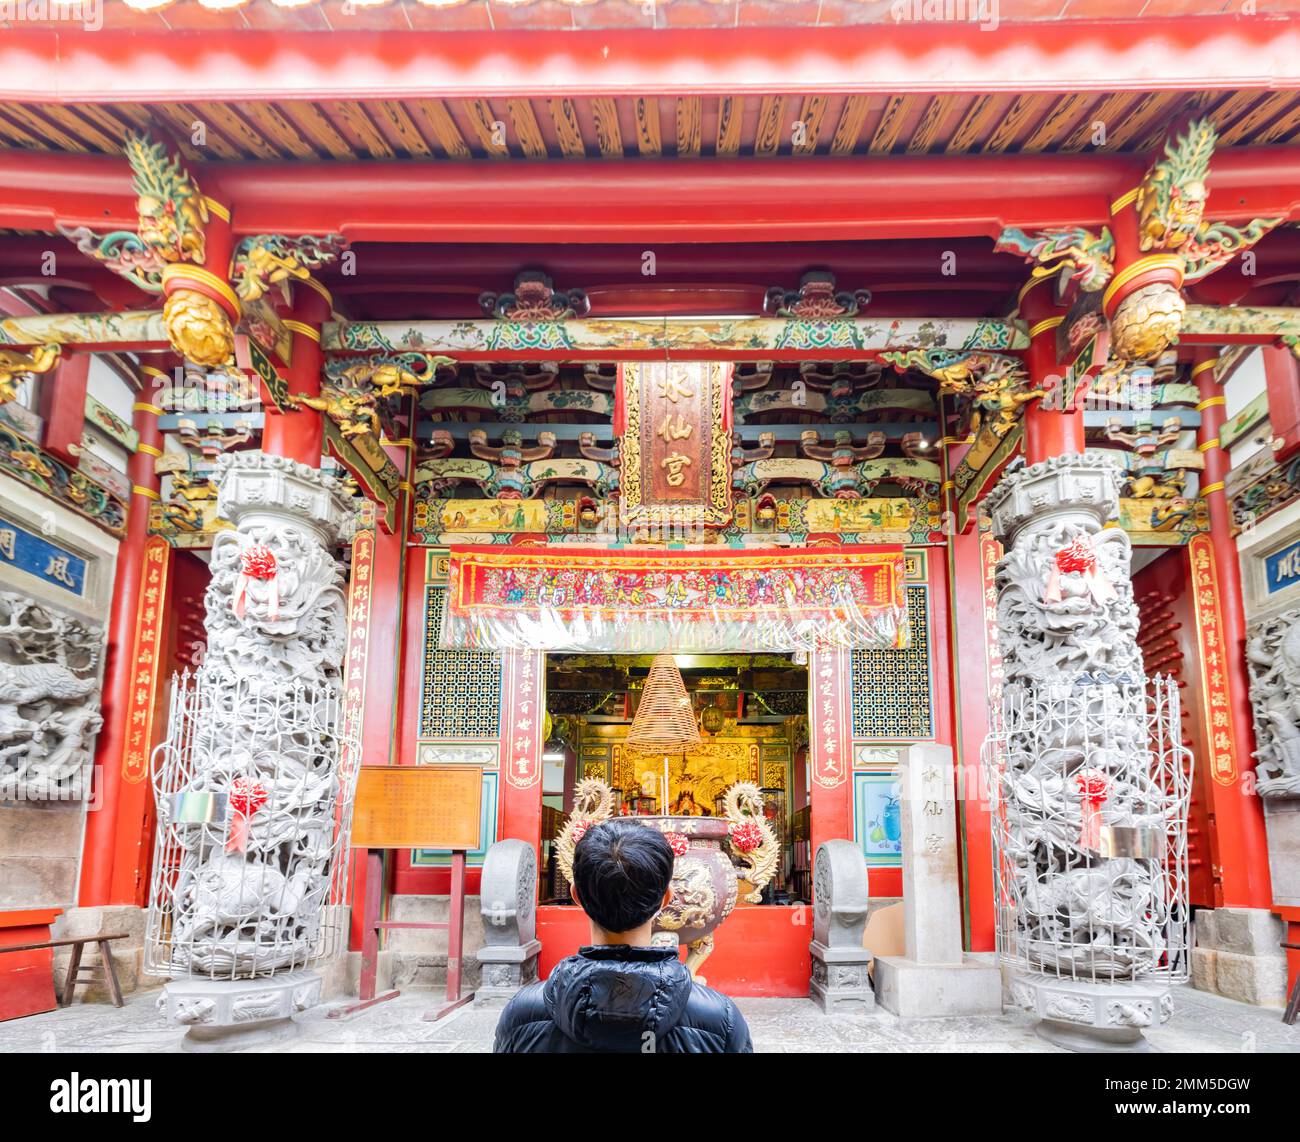 Tainan, JAN 5 2023 - Man was praying in the traditional Shuixian Gong temple Stock Photo